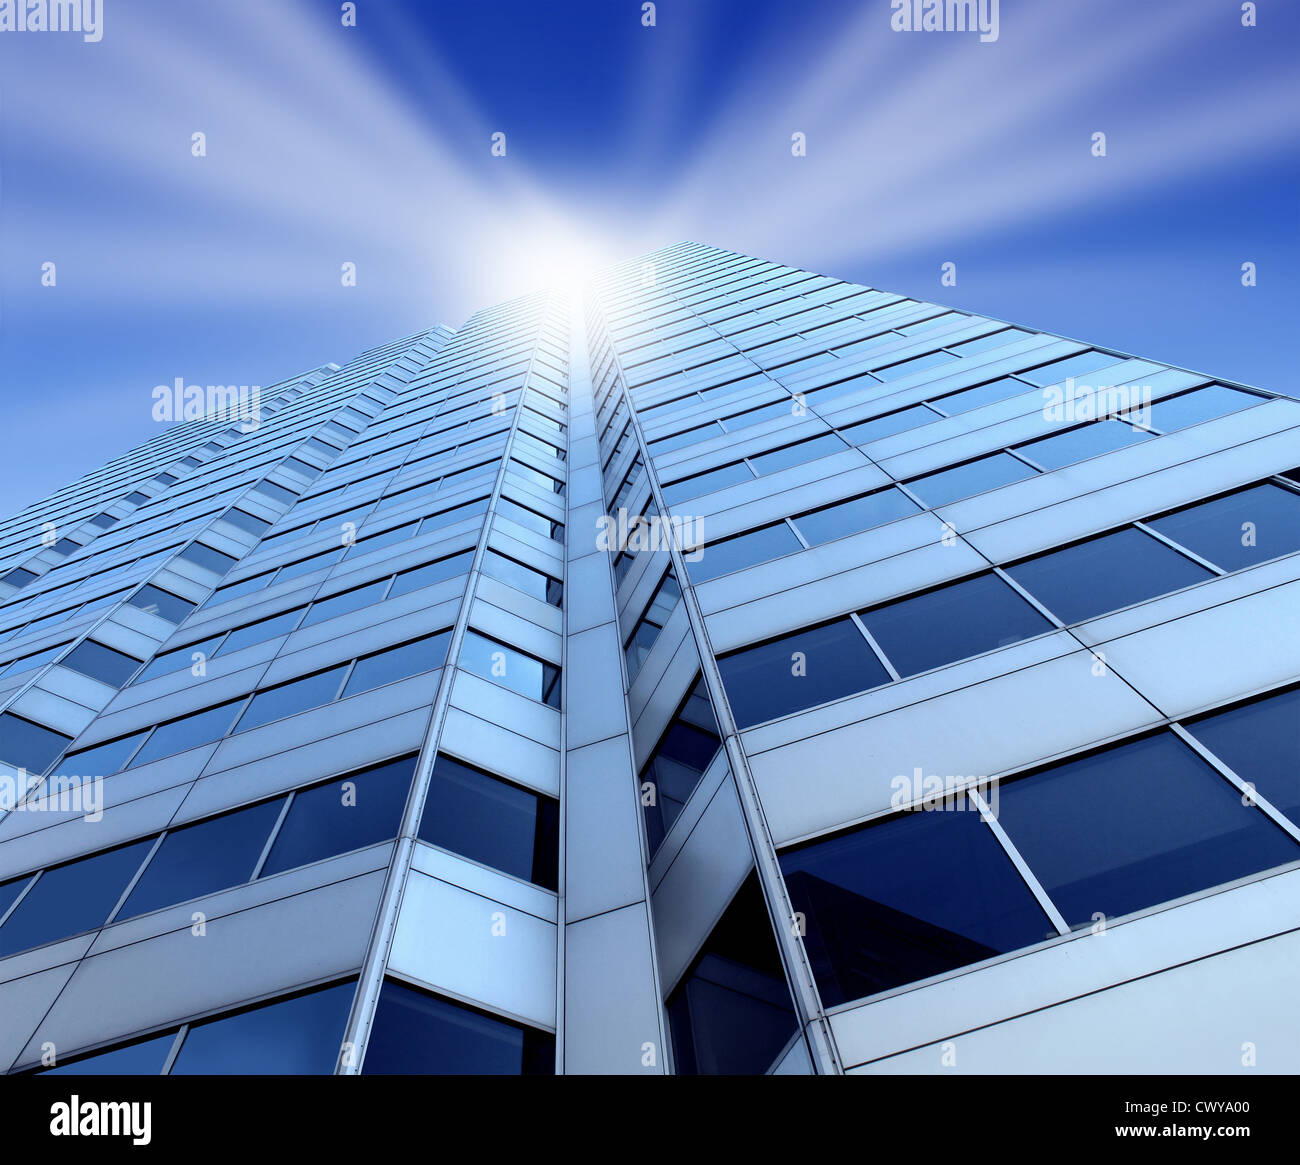 Banking-Branche mit einem Glas und Metall Wolkenkratzer Stadtturm steigen an die Spitze mit einem leichten Glanz Sterne platzen als Finanz- und finanzielle Symbol für Erfolg und Wachstum der Wirtschaft. Stockfoto